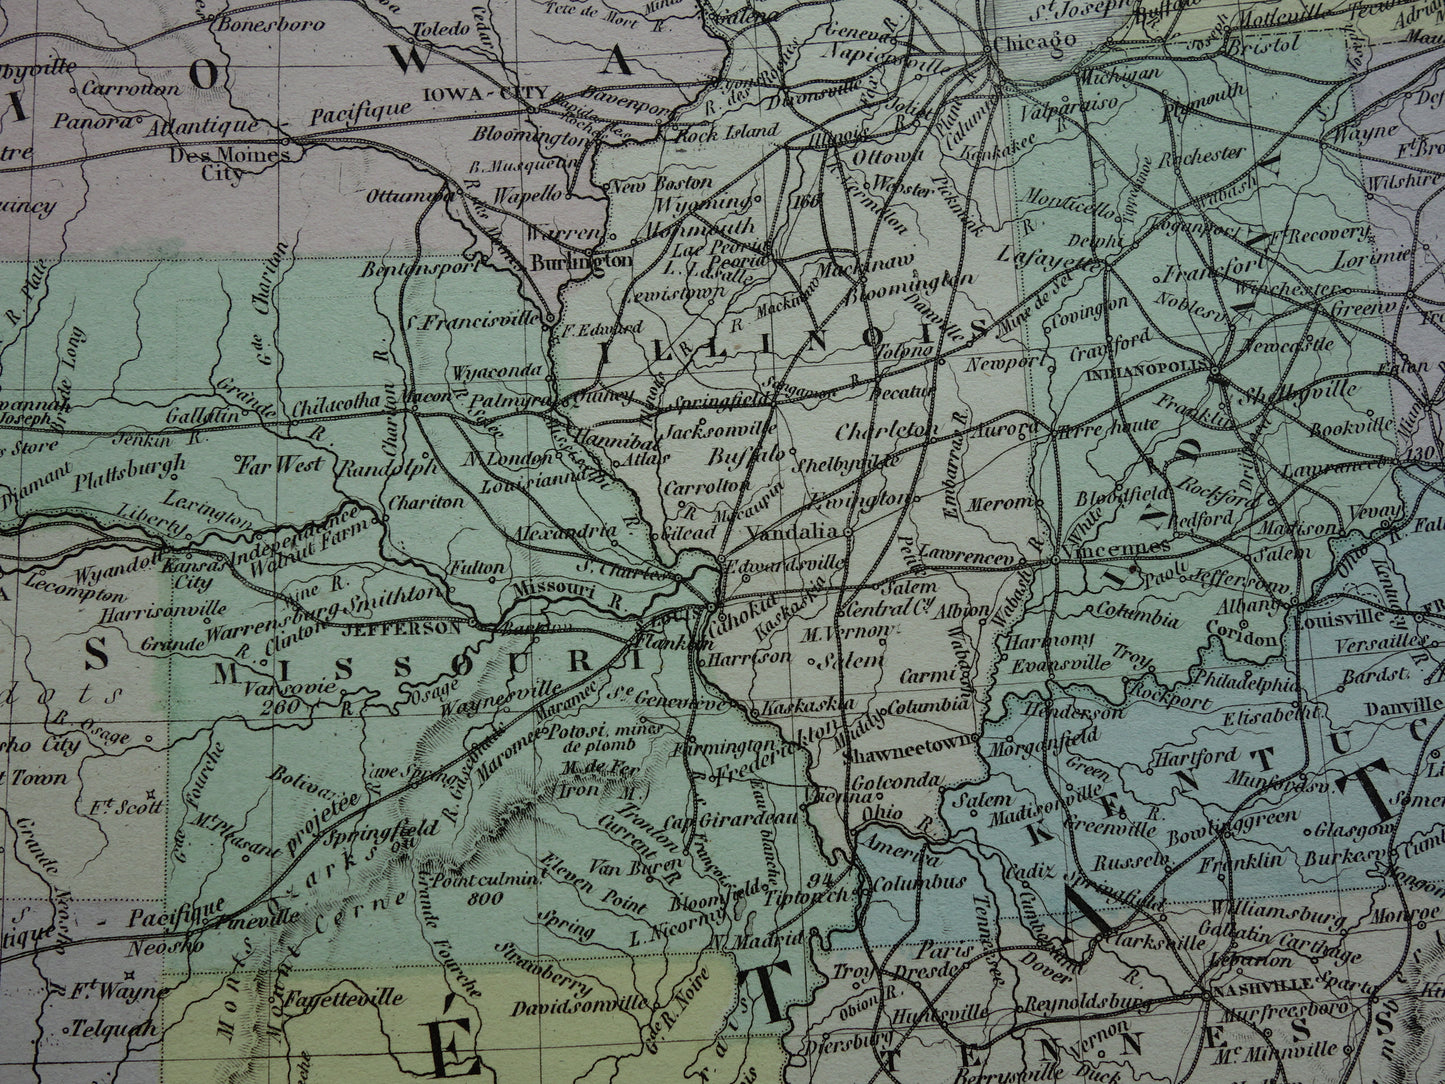 VERENIGDE STATEN antieke kaart van de VS 140+ jaar oude landkaart van Oostkust Amerika USA originele vintage historische kaarten